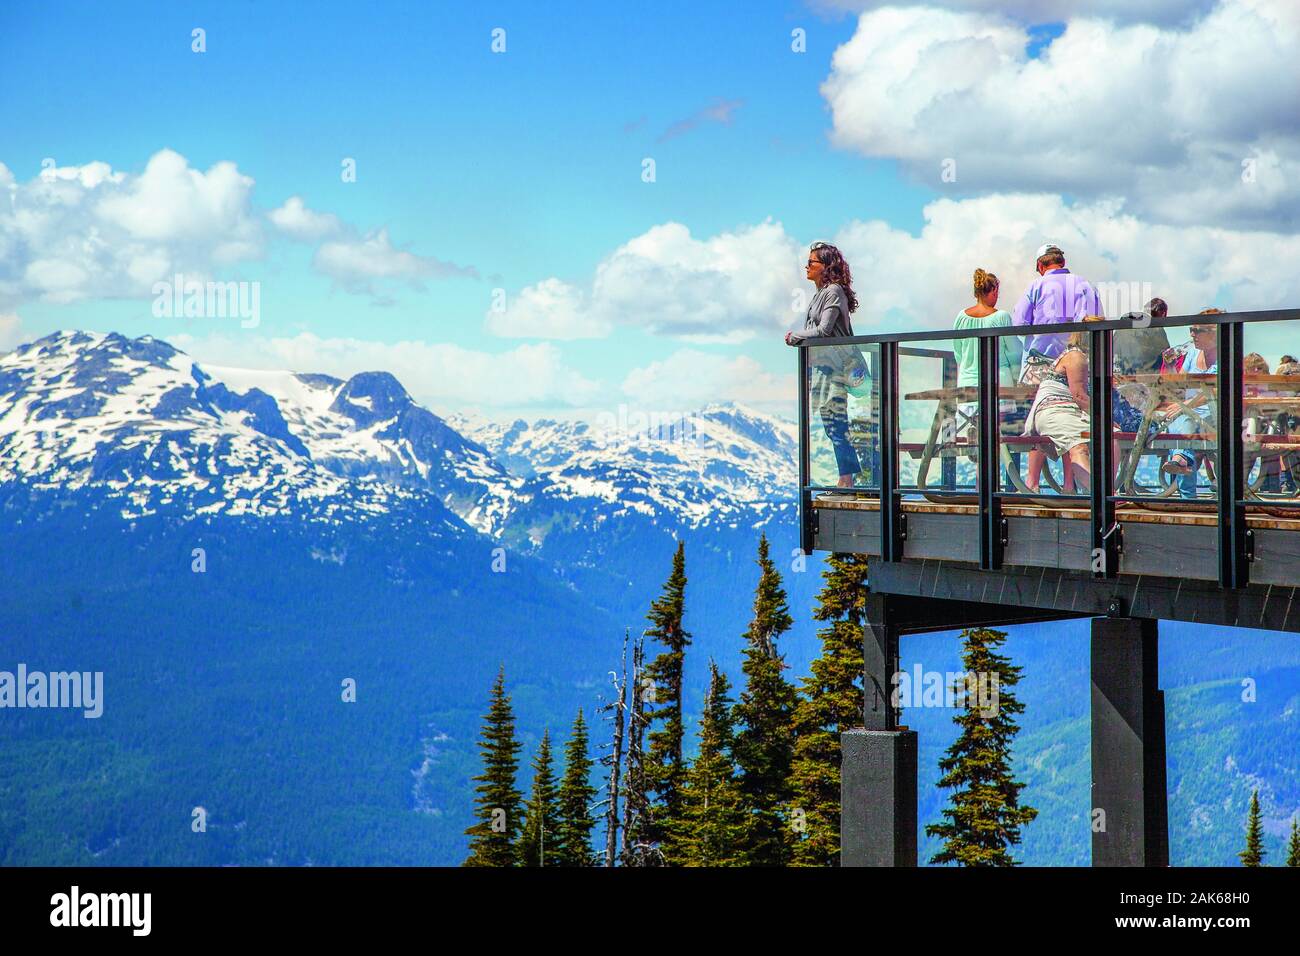 British Columbia: Whistler, 'auf Rendezvous Lodge' dem Blackcomb, Restaurant mit Panoramaterrasse, Kanada Westen | Verwendung weltweit Stockfoto